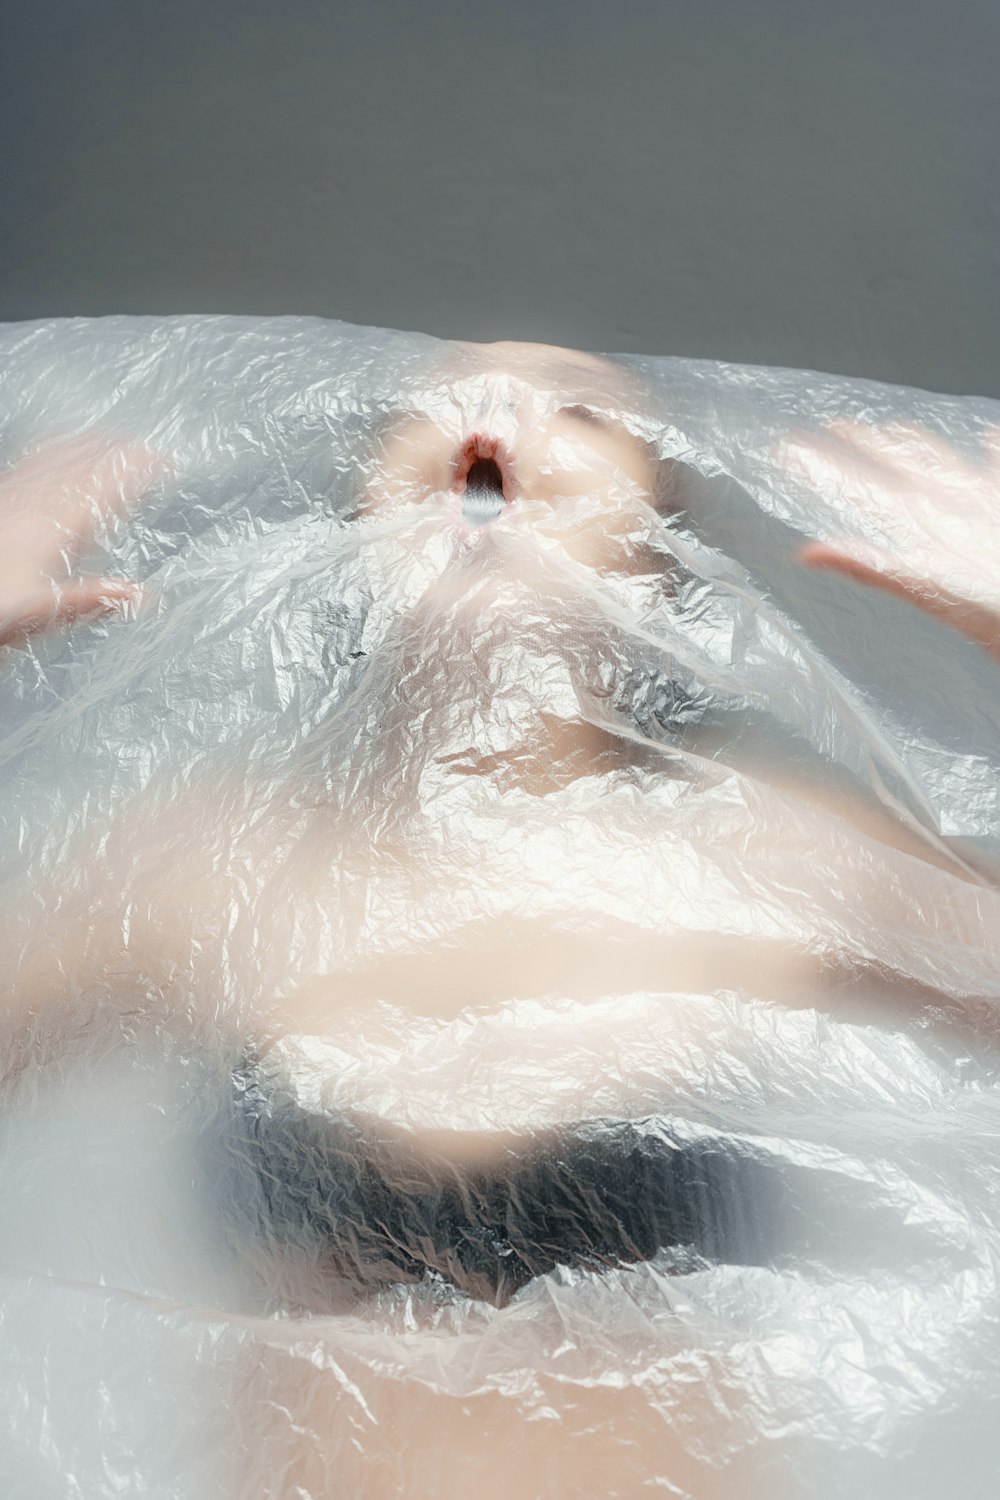 une femme allongée dans une baignoire recouverte de plastique